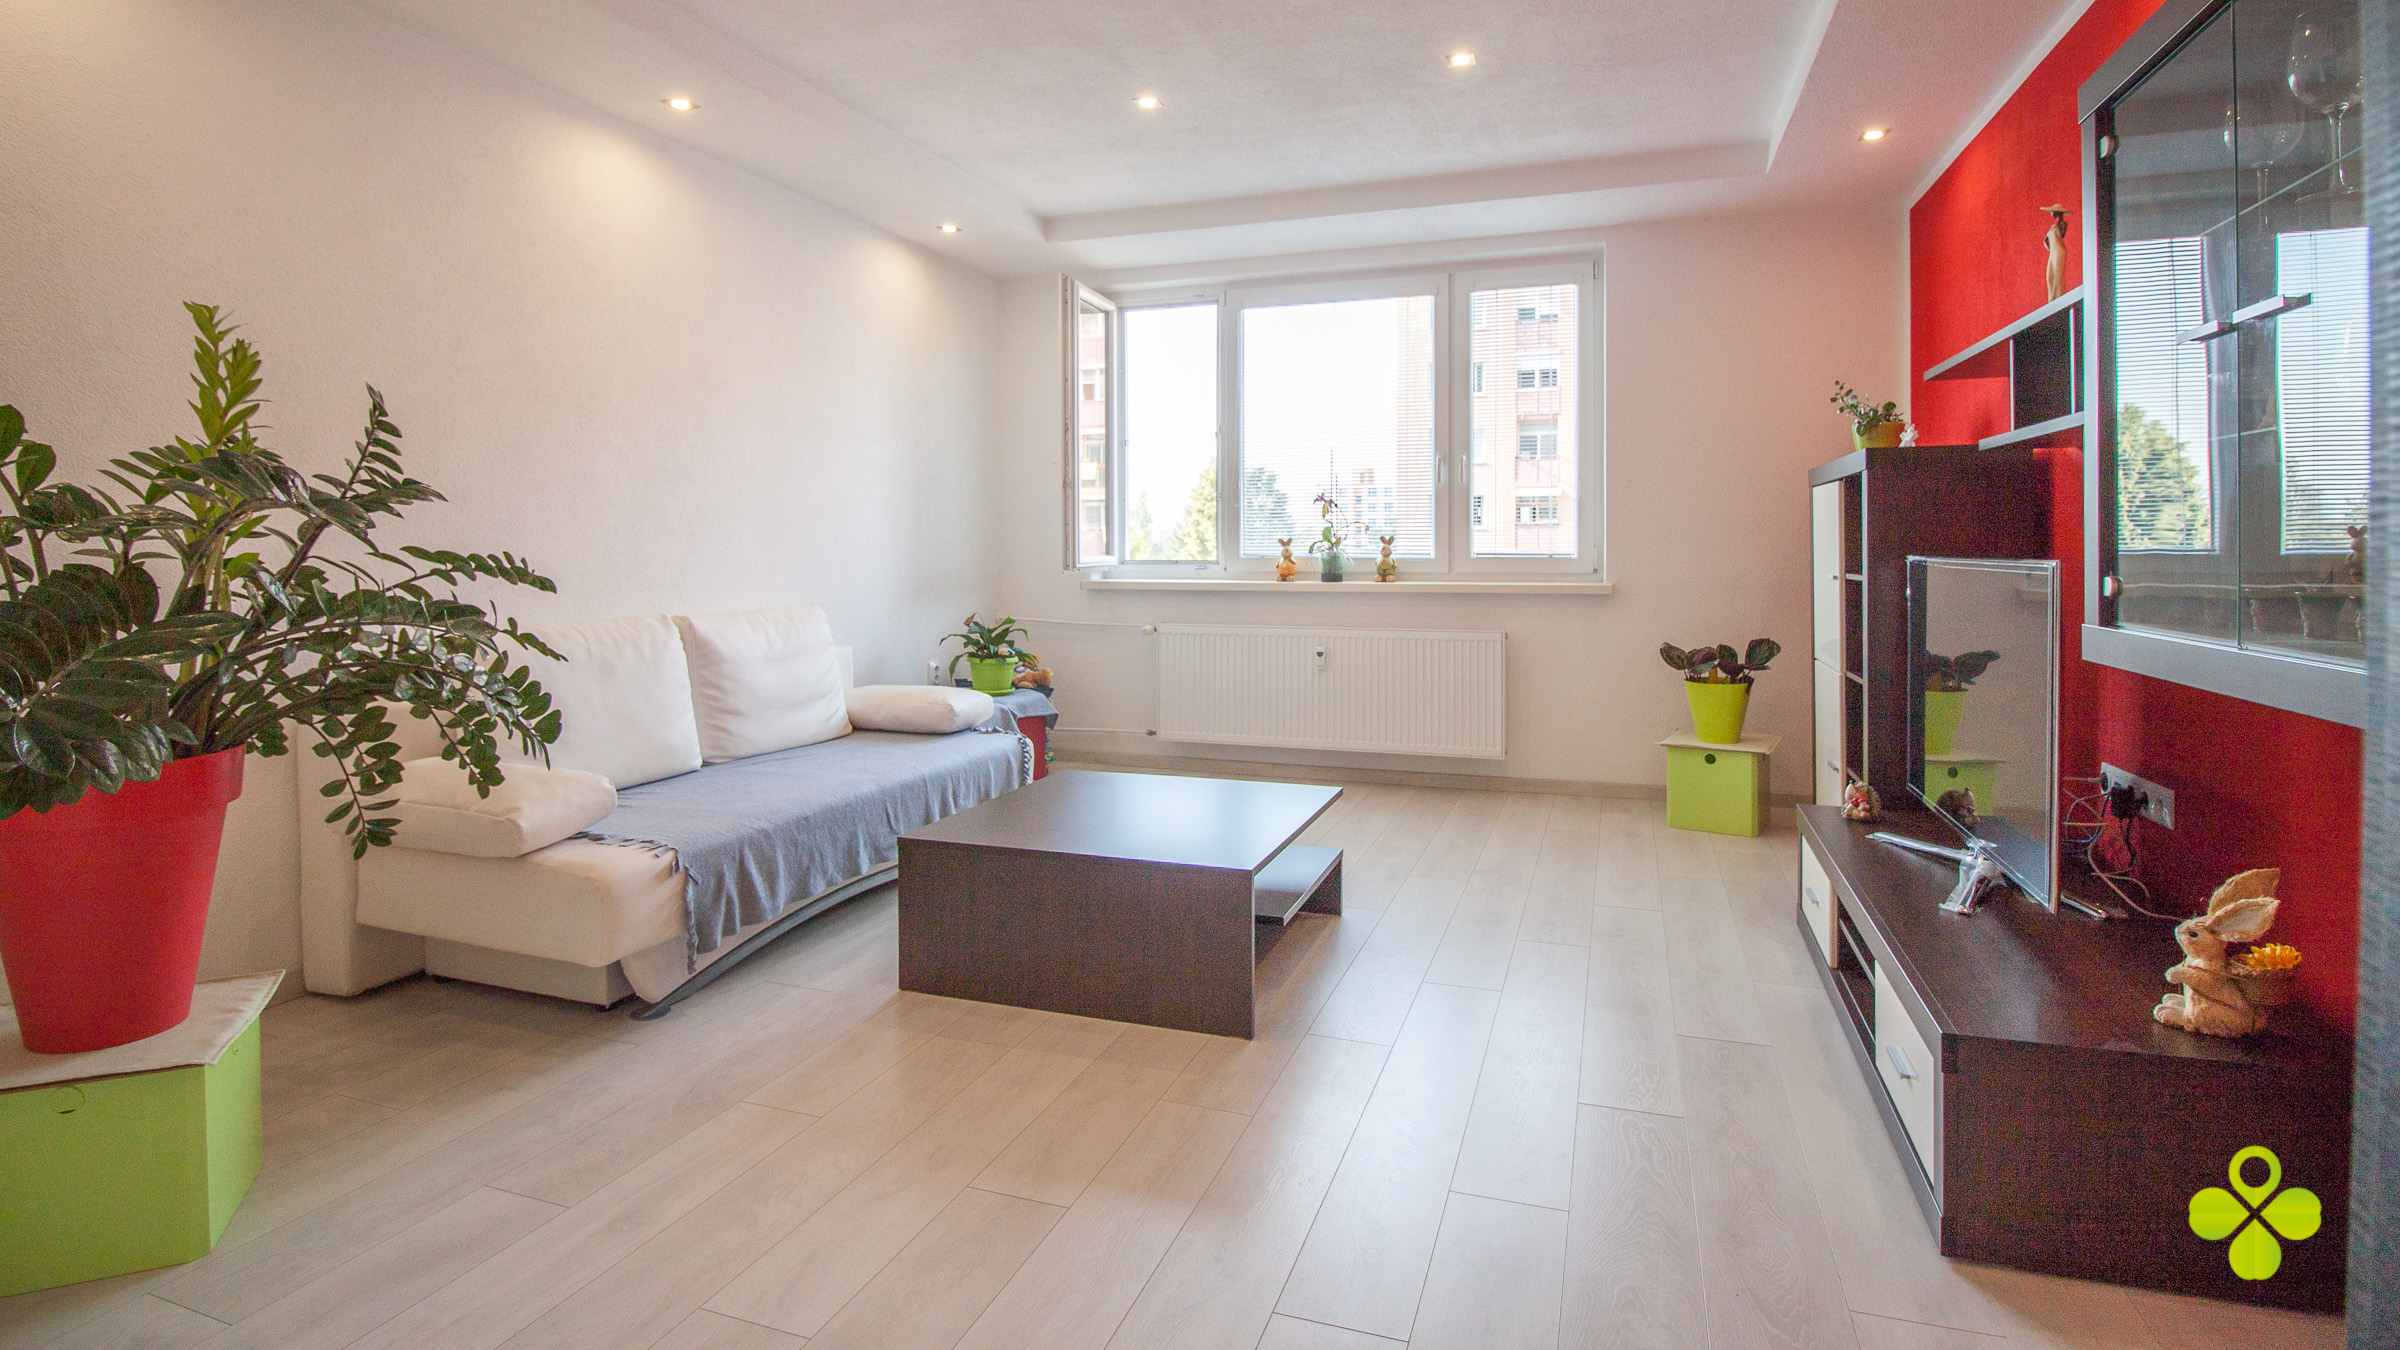 PREDANÉ – Zrekonštruovaný 3 izbový byt s lodžiou 72 m2 UL. Žarnova Zapotôčky